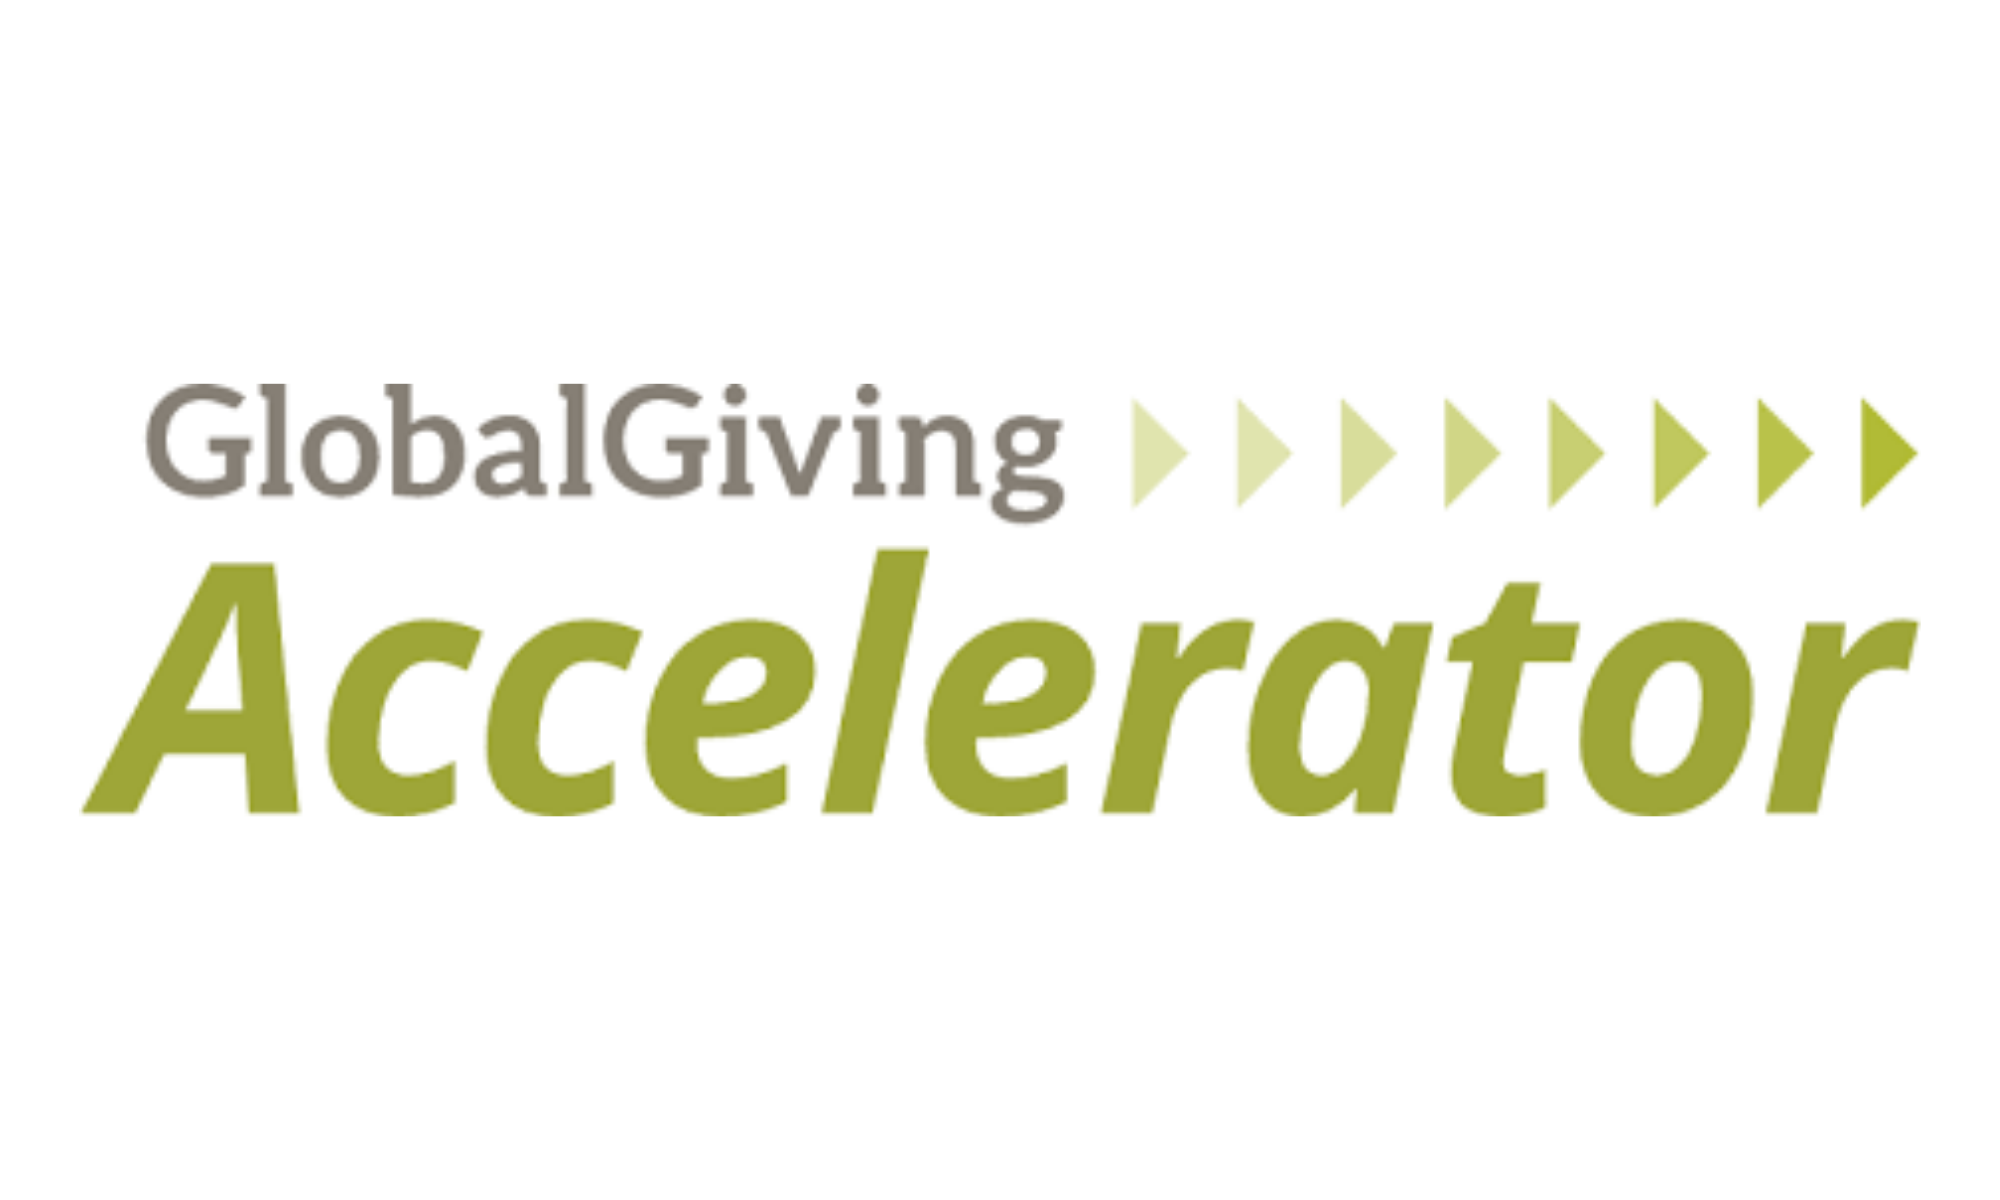 ¡Gracias a tu ayuda logramos graduarnos en el GlobalGiving Accelerator!